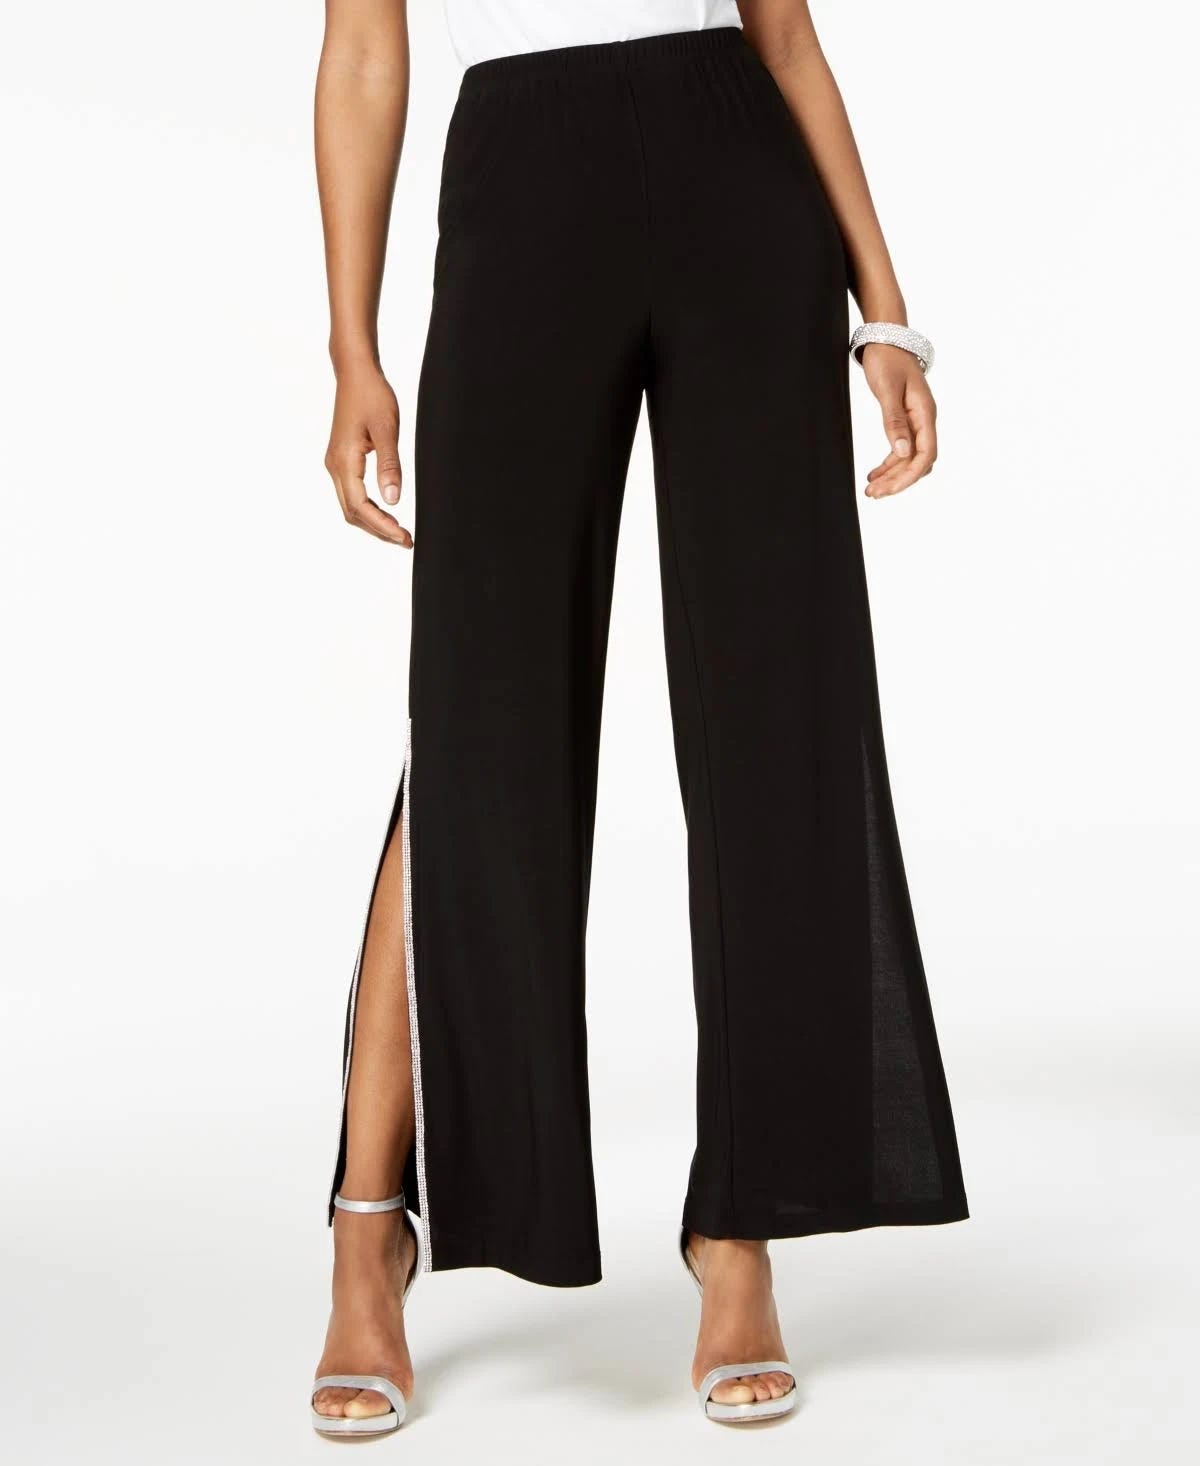 Shimmering Sequin Pants for Black Glam | Image